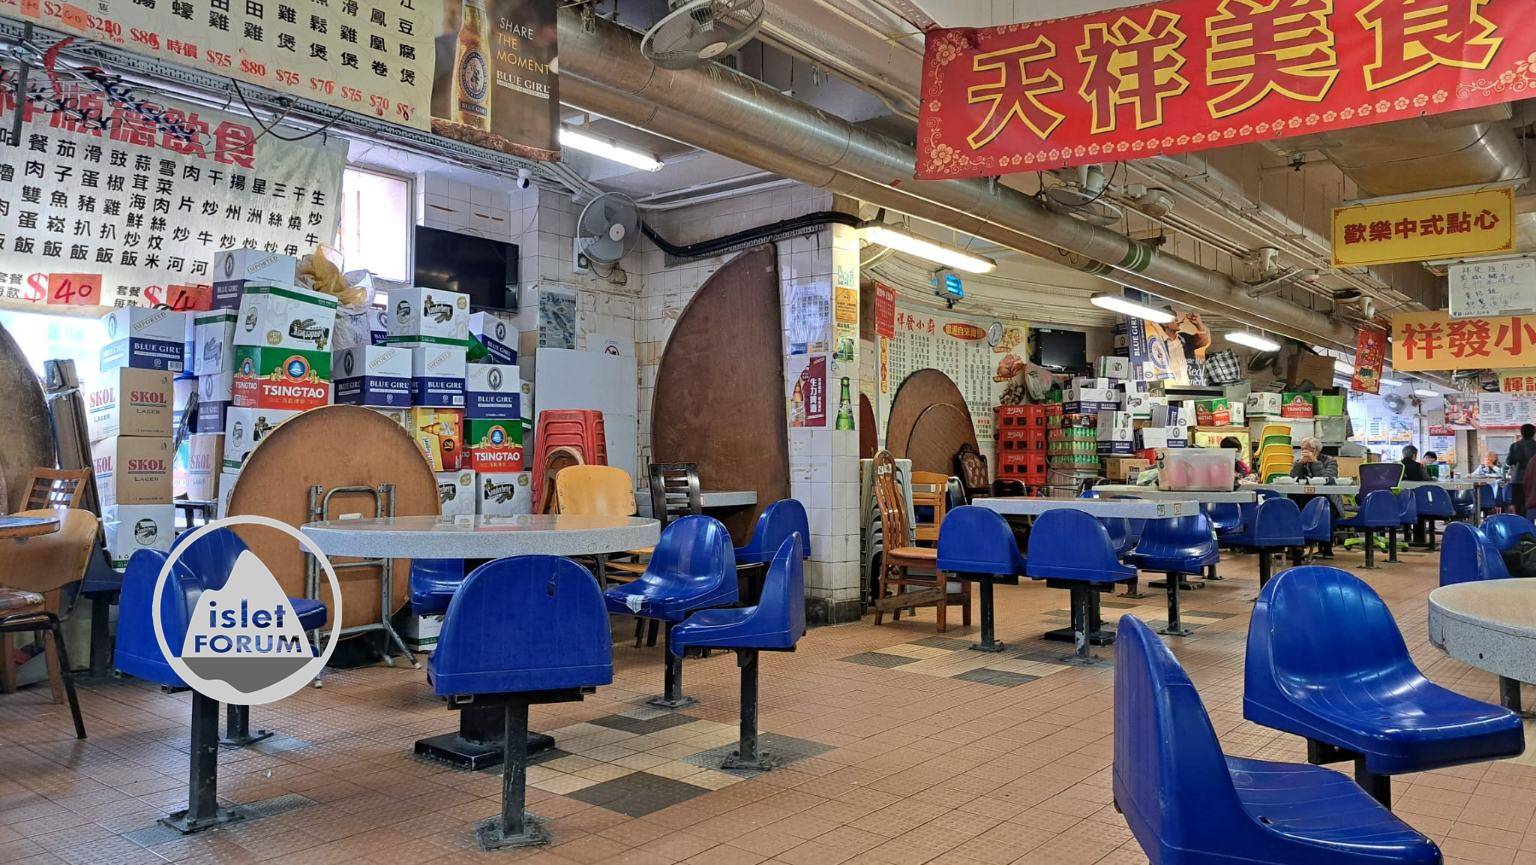 香港的熟食中心枱凳 Cooked Food Center Bench Stools in Hong Kong (3).jpg